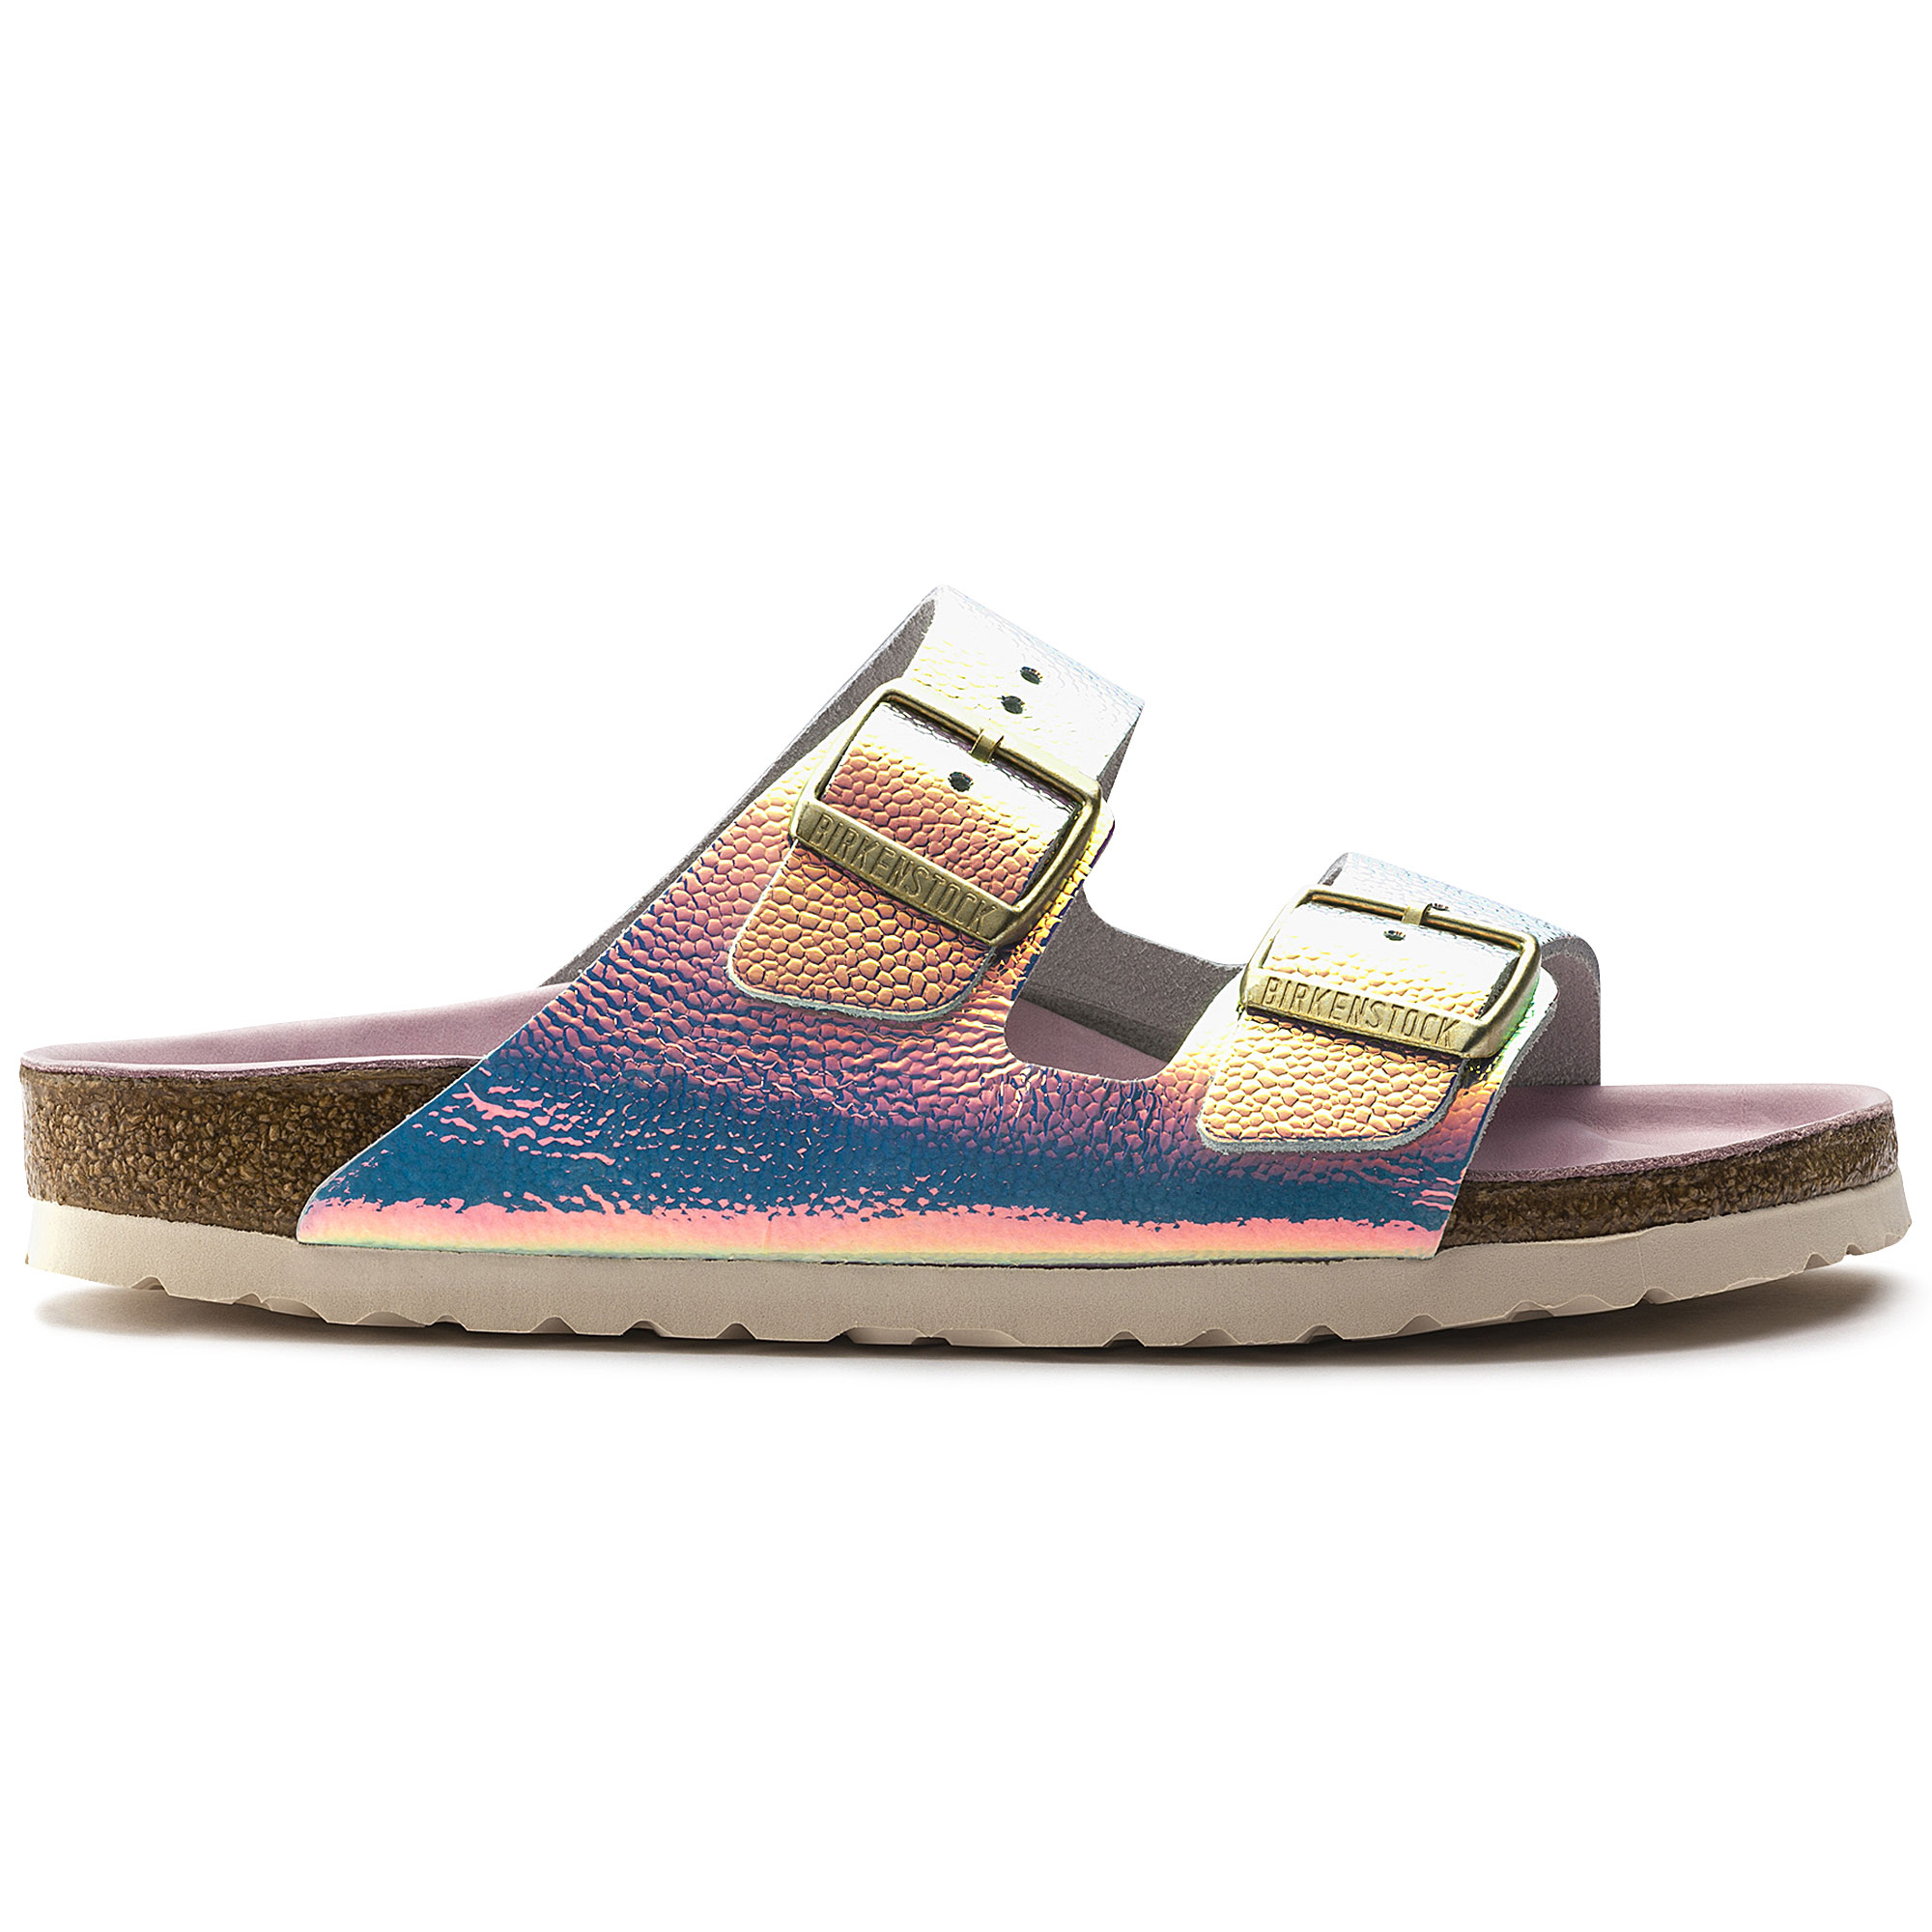 iridescent birkenstock sandals